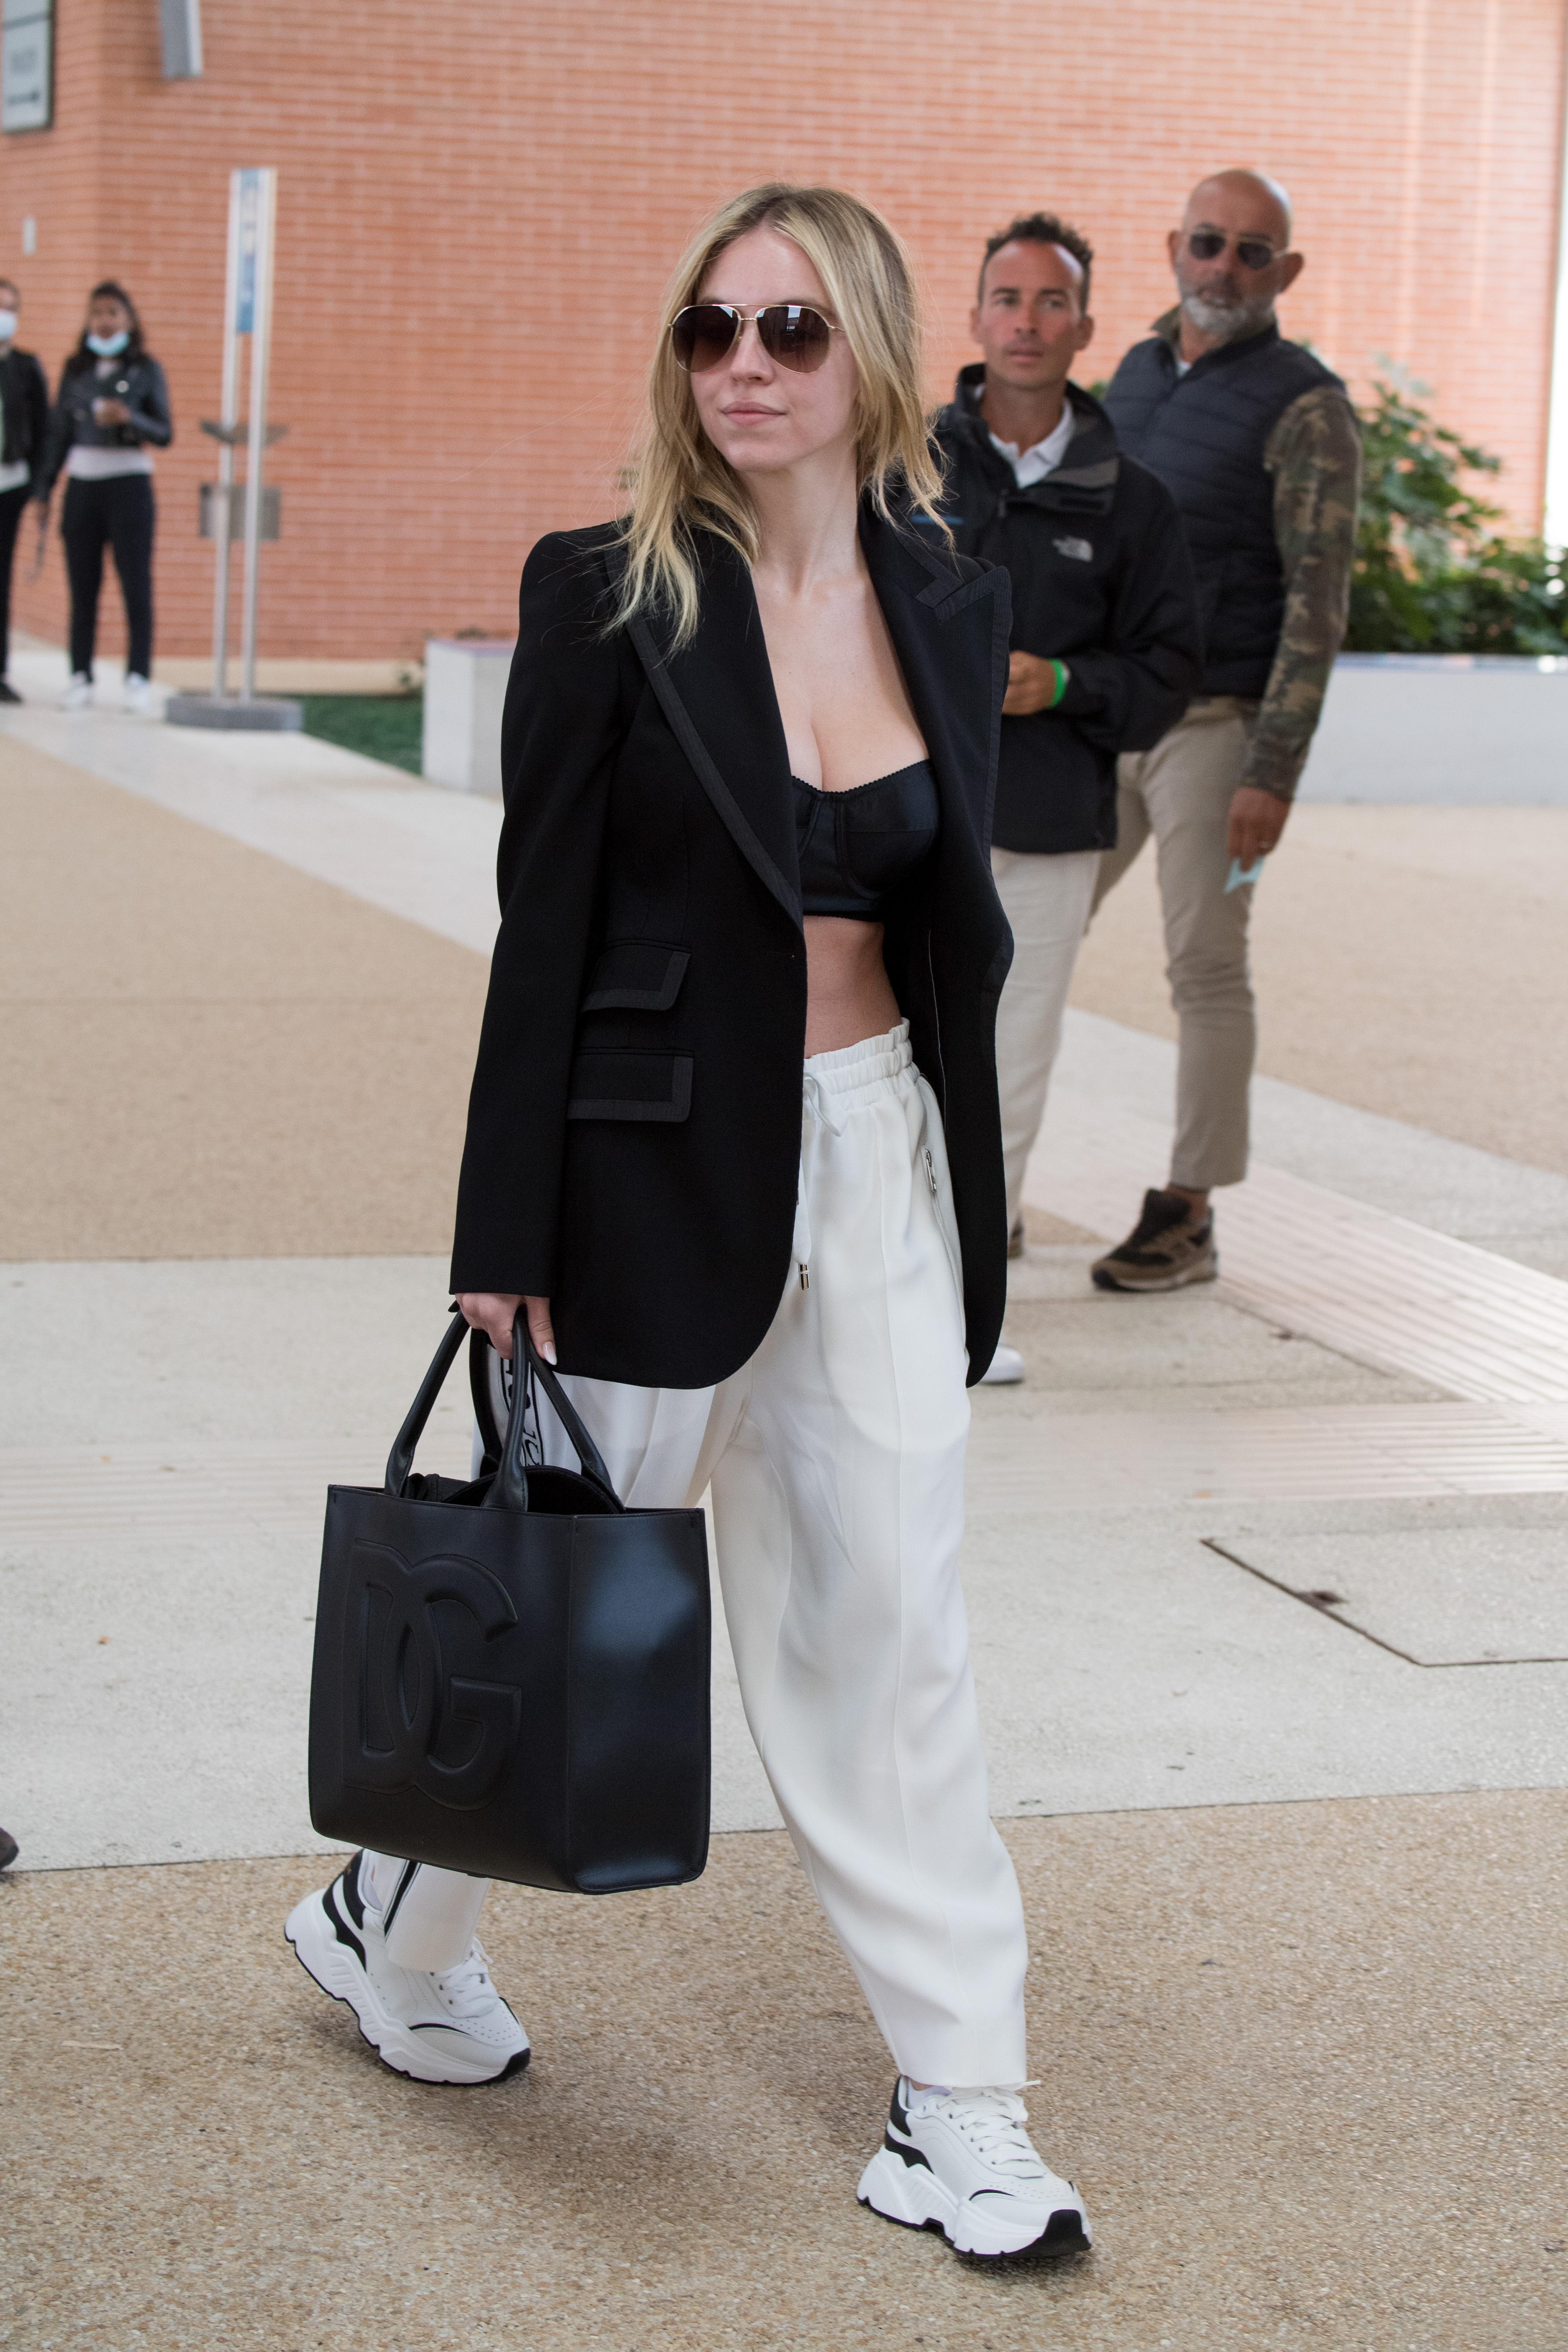 Sydney Sweeney andando na rua e usando look com blazer e top cropped pretos, calça e tênis brancos e segurando uma maxibolsa preta, além de estar usando óculos de sol